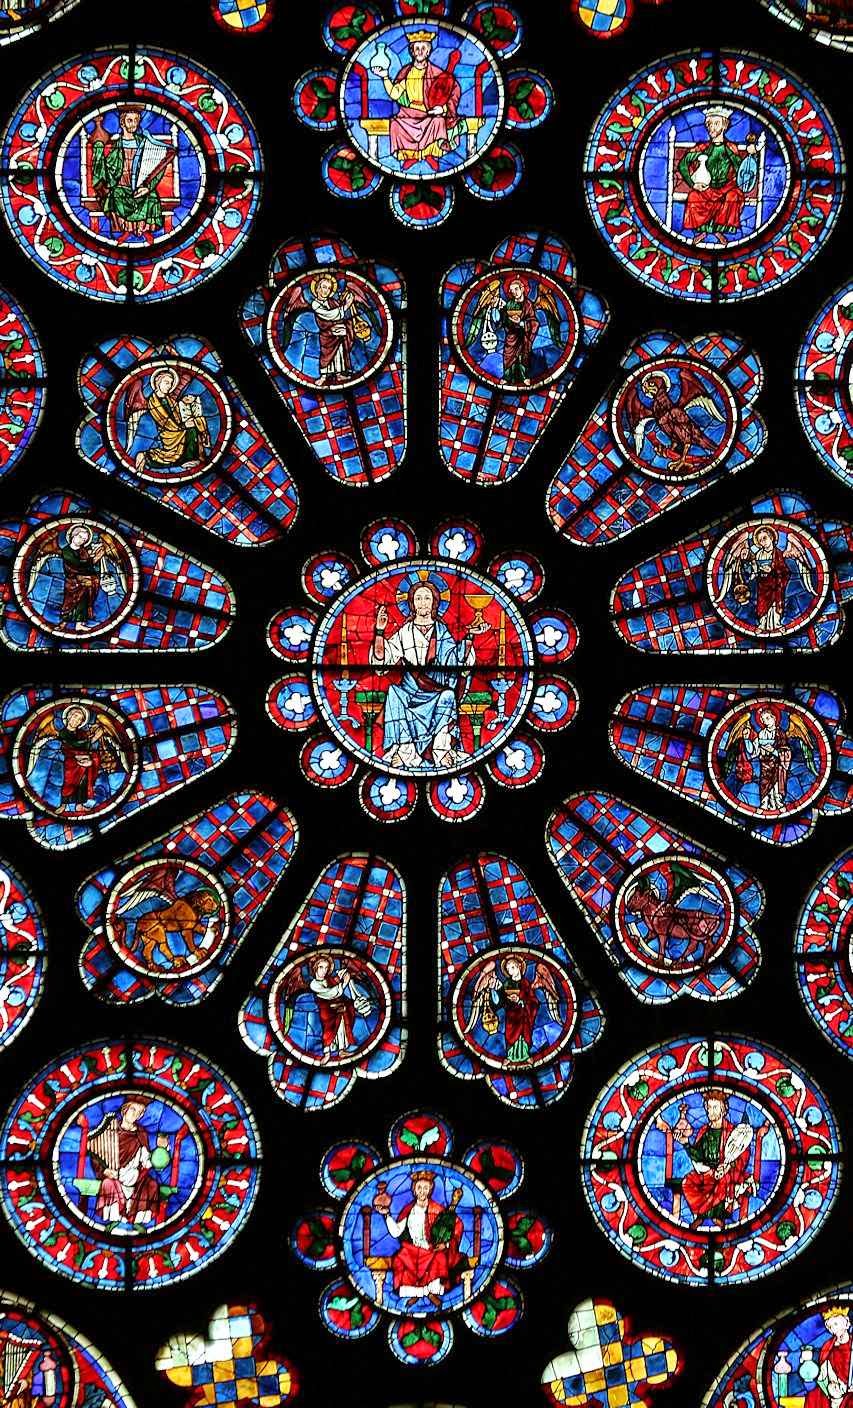 Detalhe central da rosácea do transepto da catedral de Chartres, França